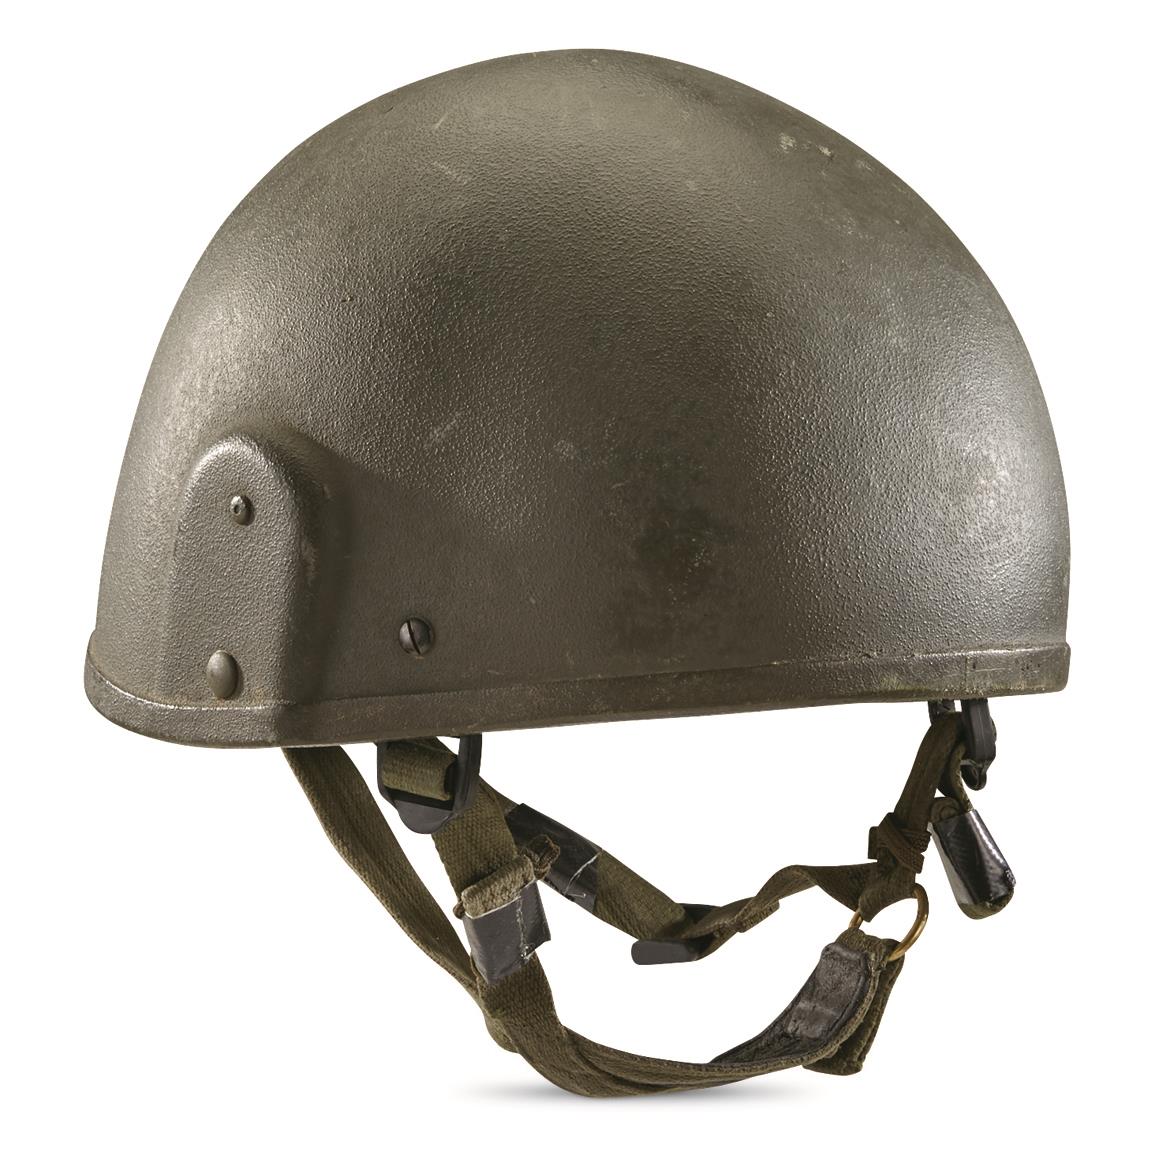 British Military Surplus MK 6 Ballistic Combat Helmet, Used